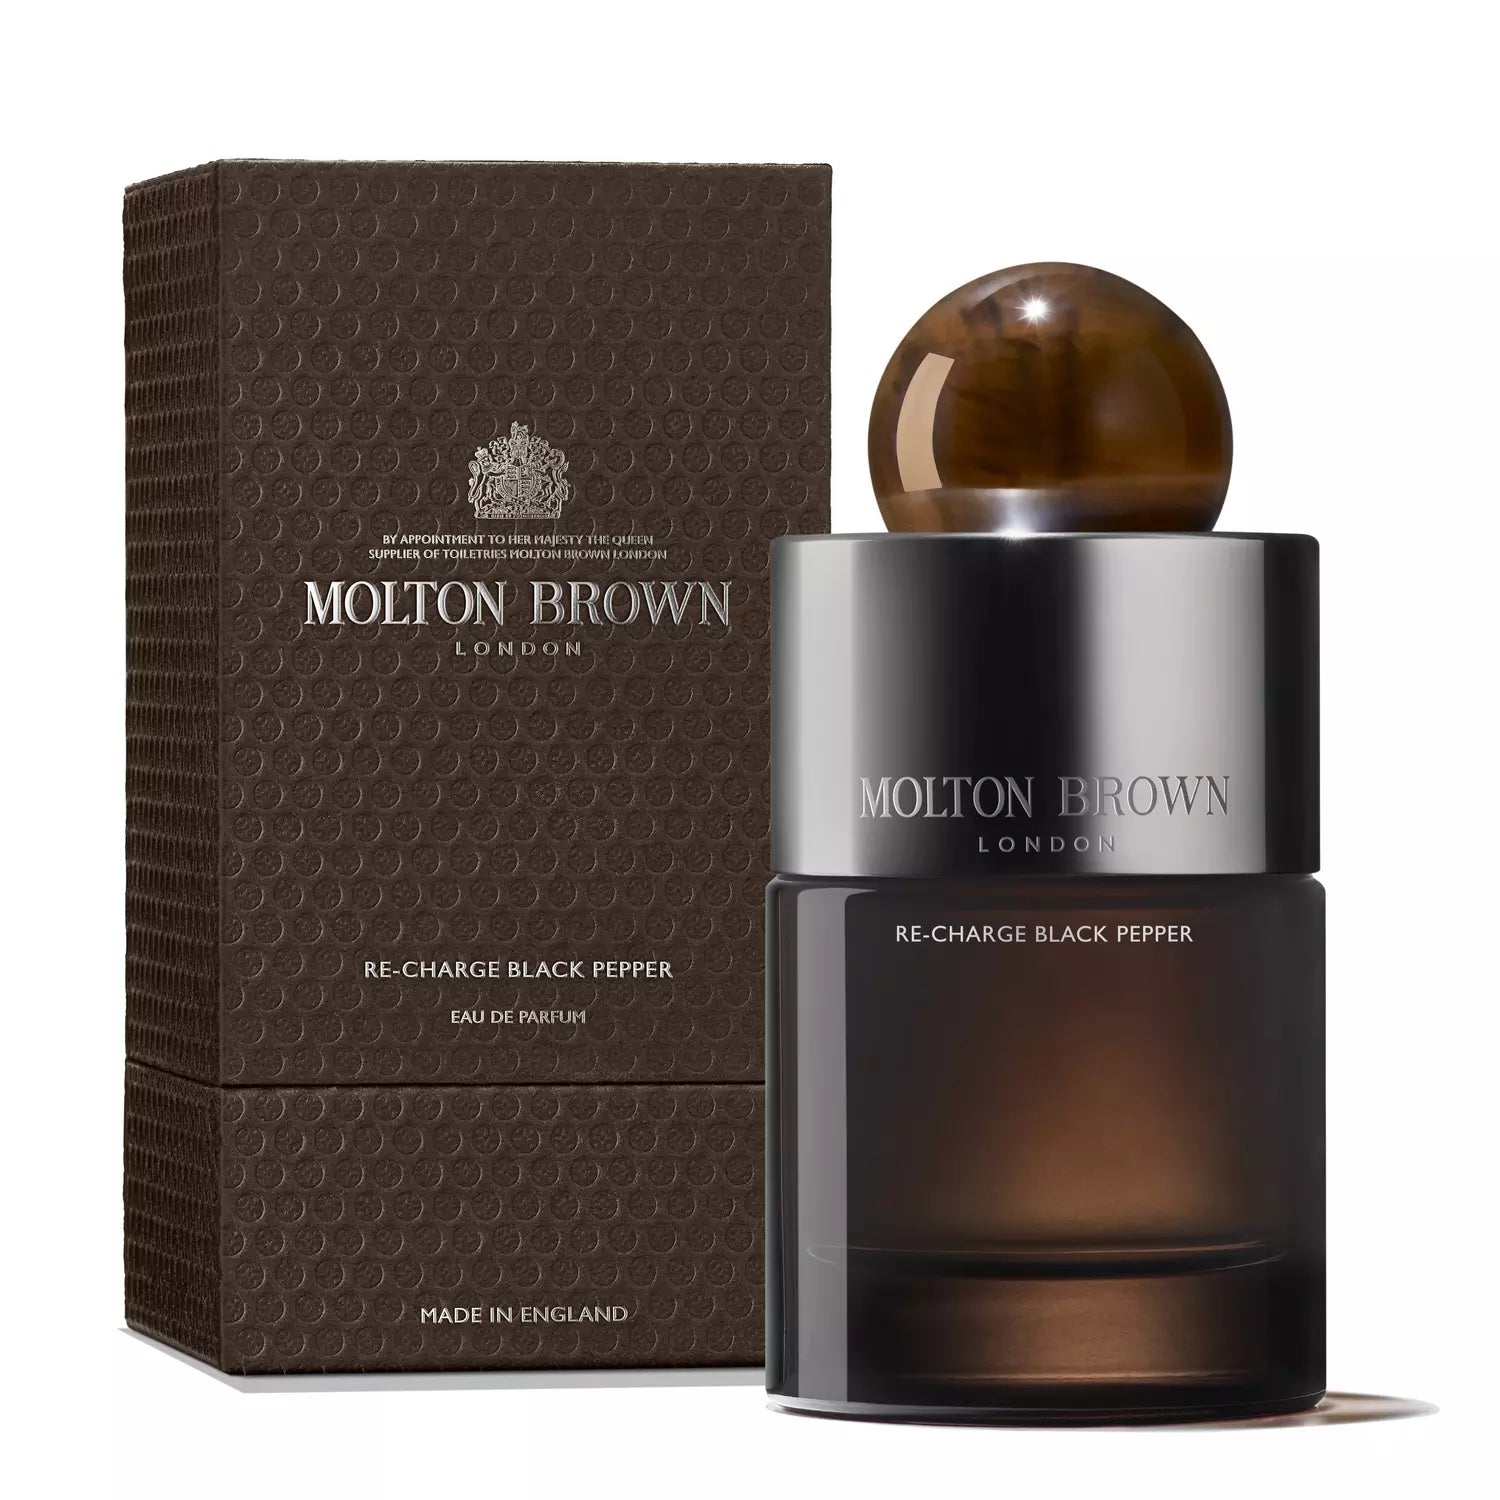 Molton Brown Re-Charge Black Pepper Eau de Parfum